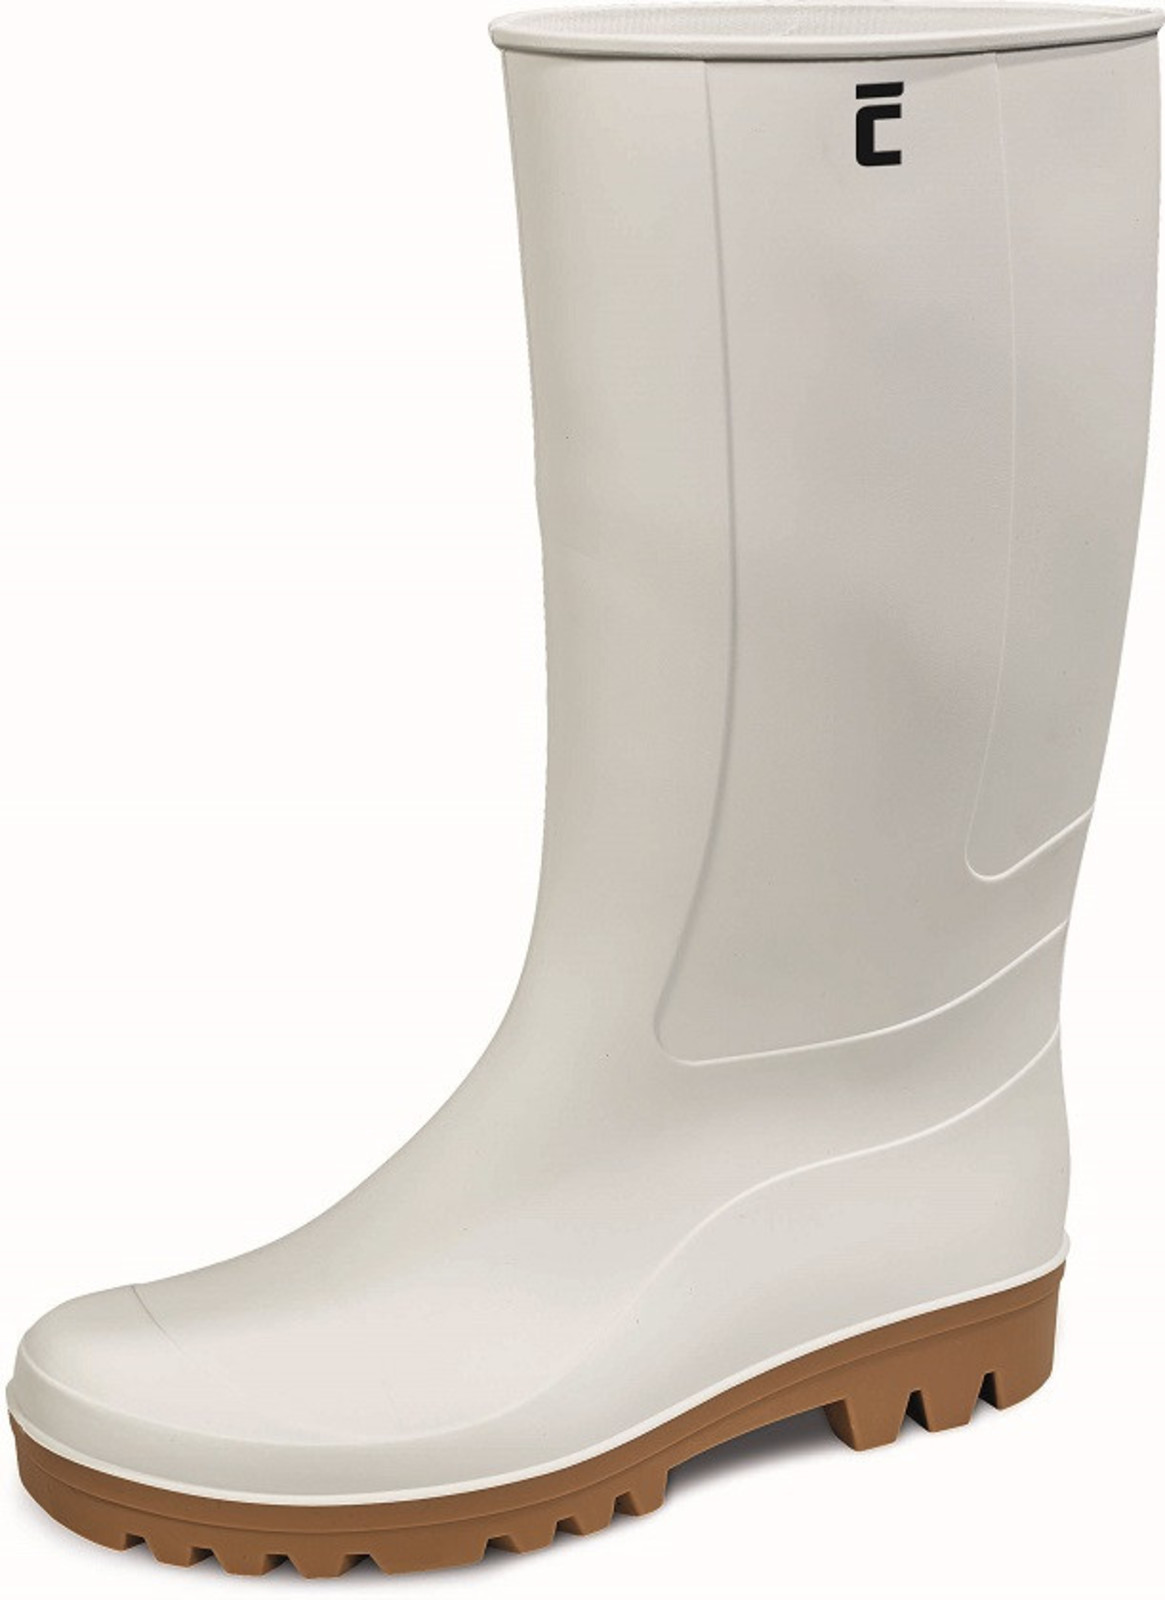 Gumáky Boots BC Food O4  - veľkosť: 36, farba: biela